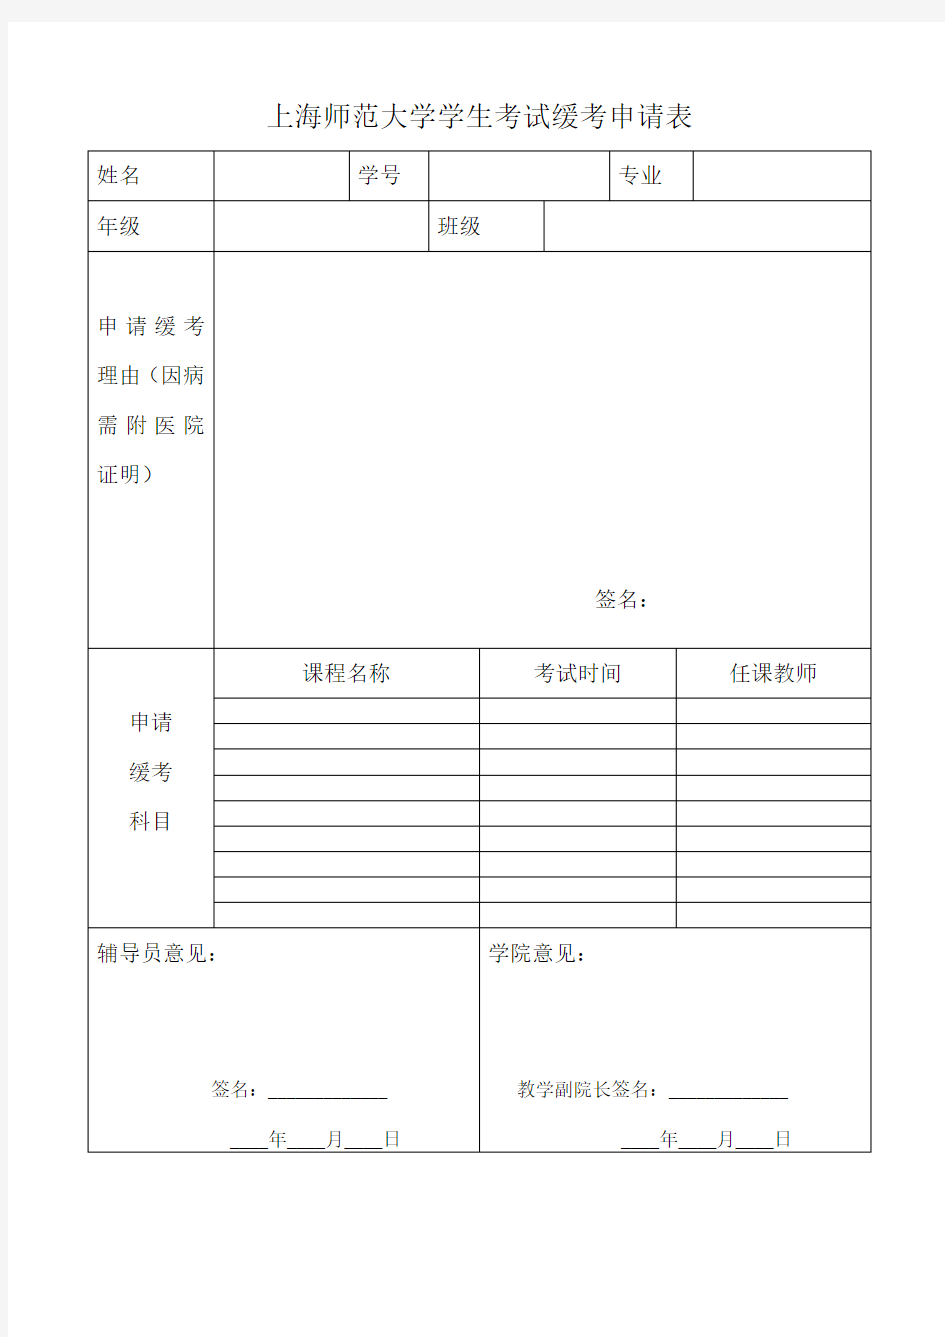 上海师范大学学生考试缓考申请表